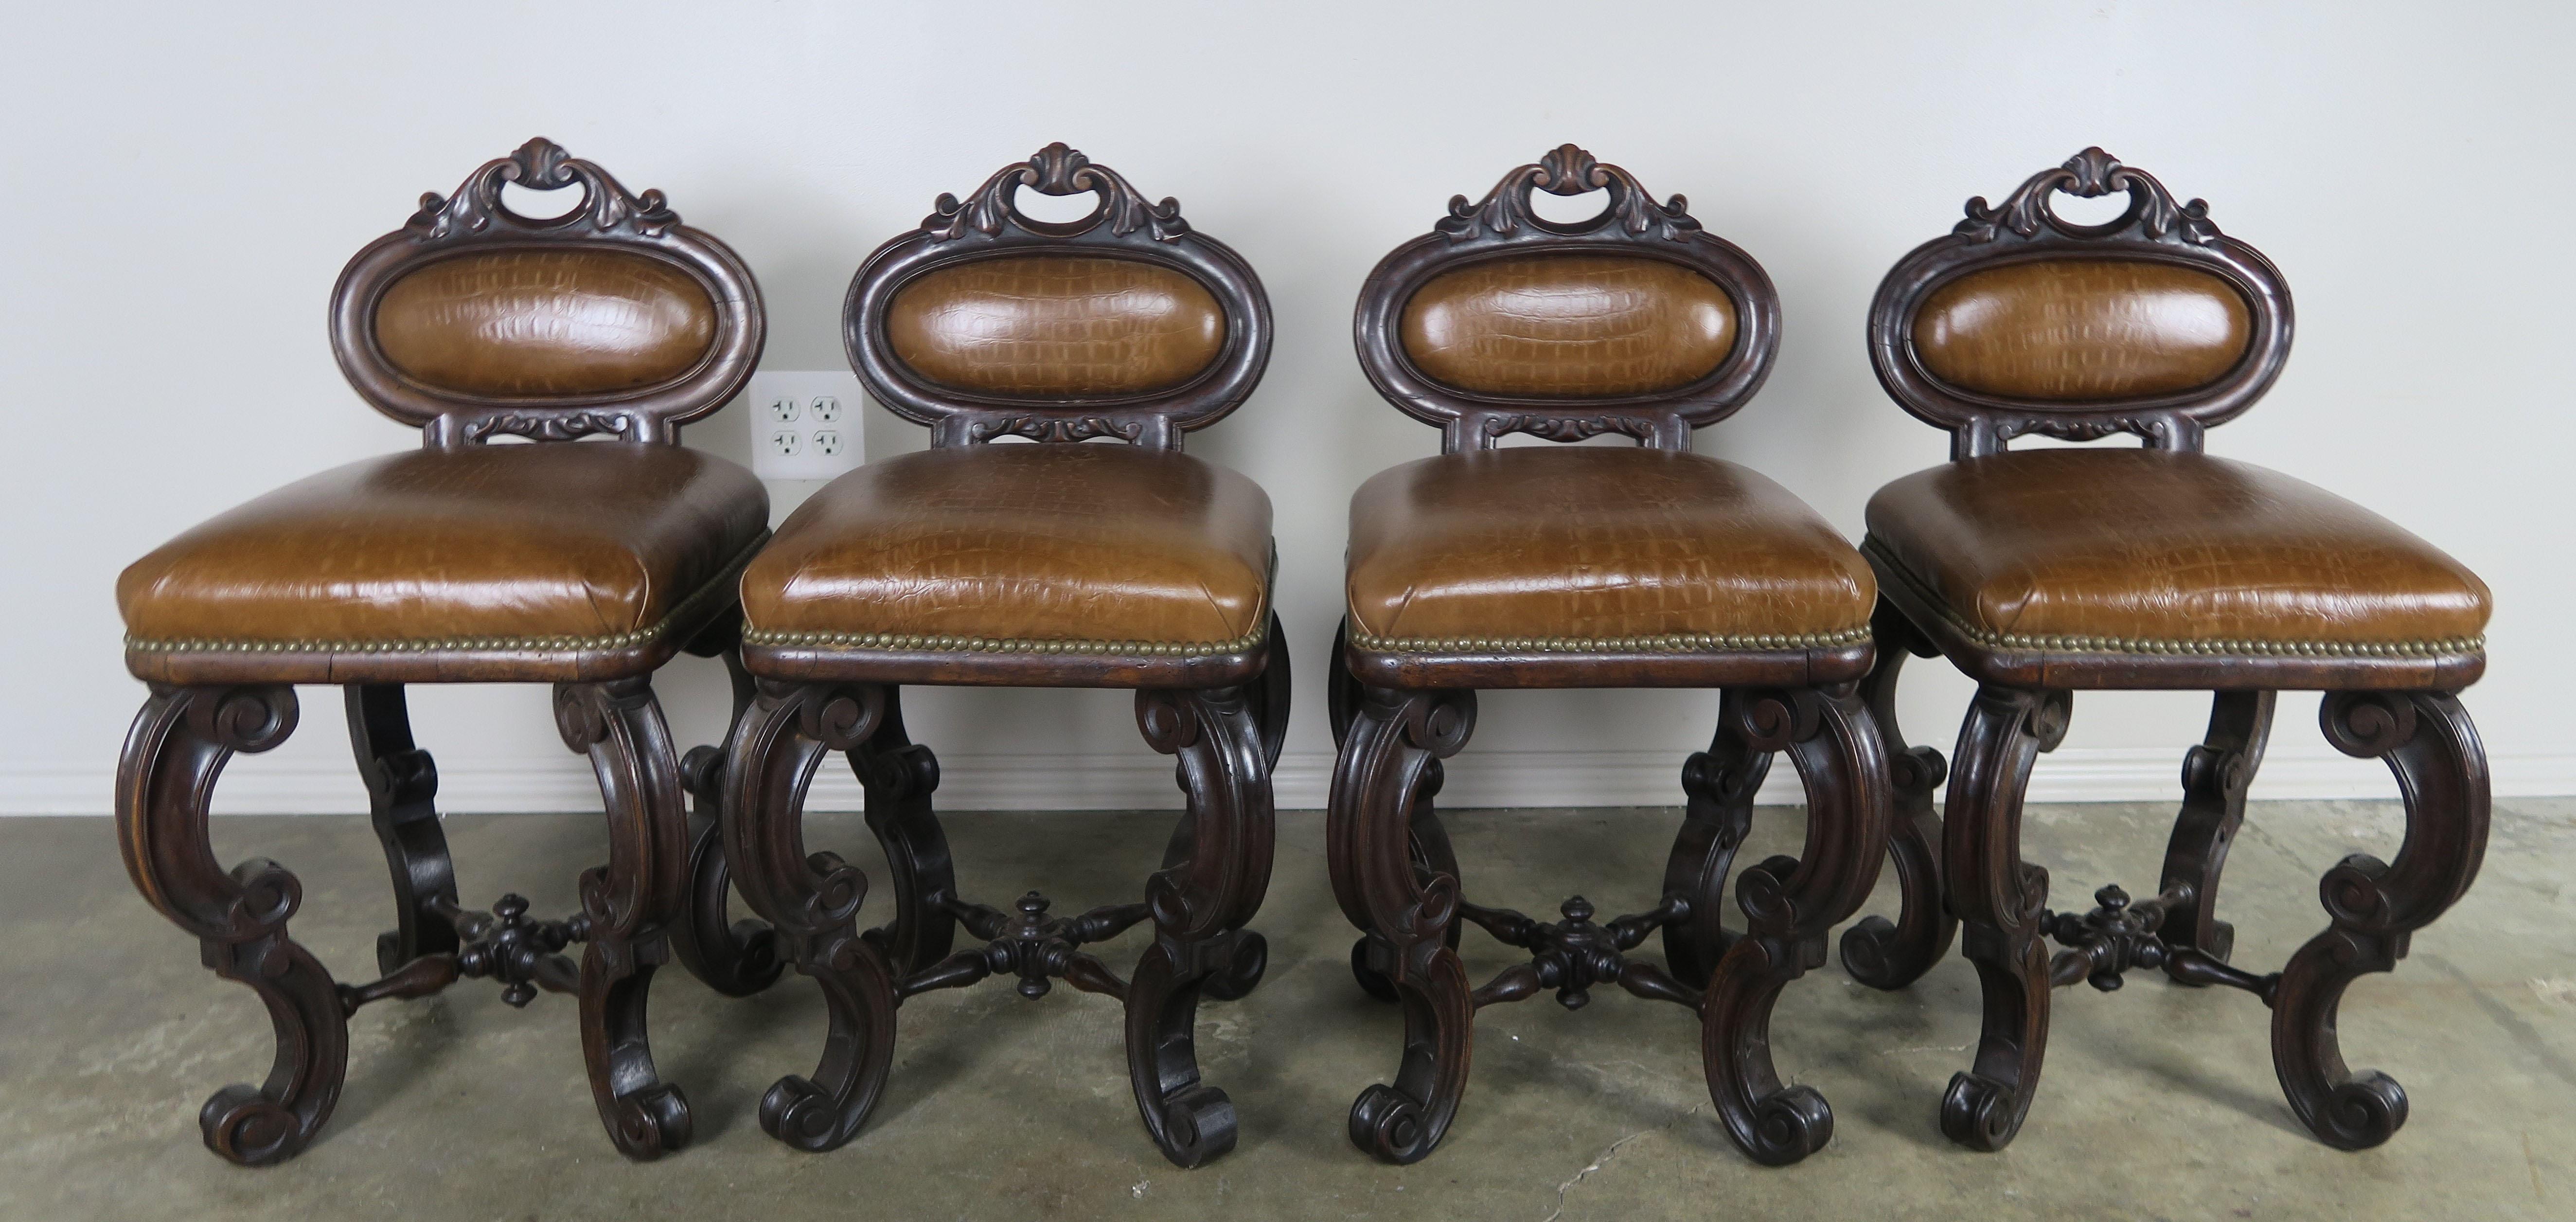 Satz von vier französischen Sesseln aus geprägtem Leder, bezogen mit einem Leder, das an Krokodil erinnert. Großartiges Set von zierlichen Beistellsesseln, die sich auch hervorragend als Spielstühle für einen Spieltisch eignen. Diese einzigartigen